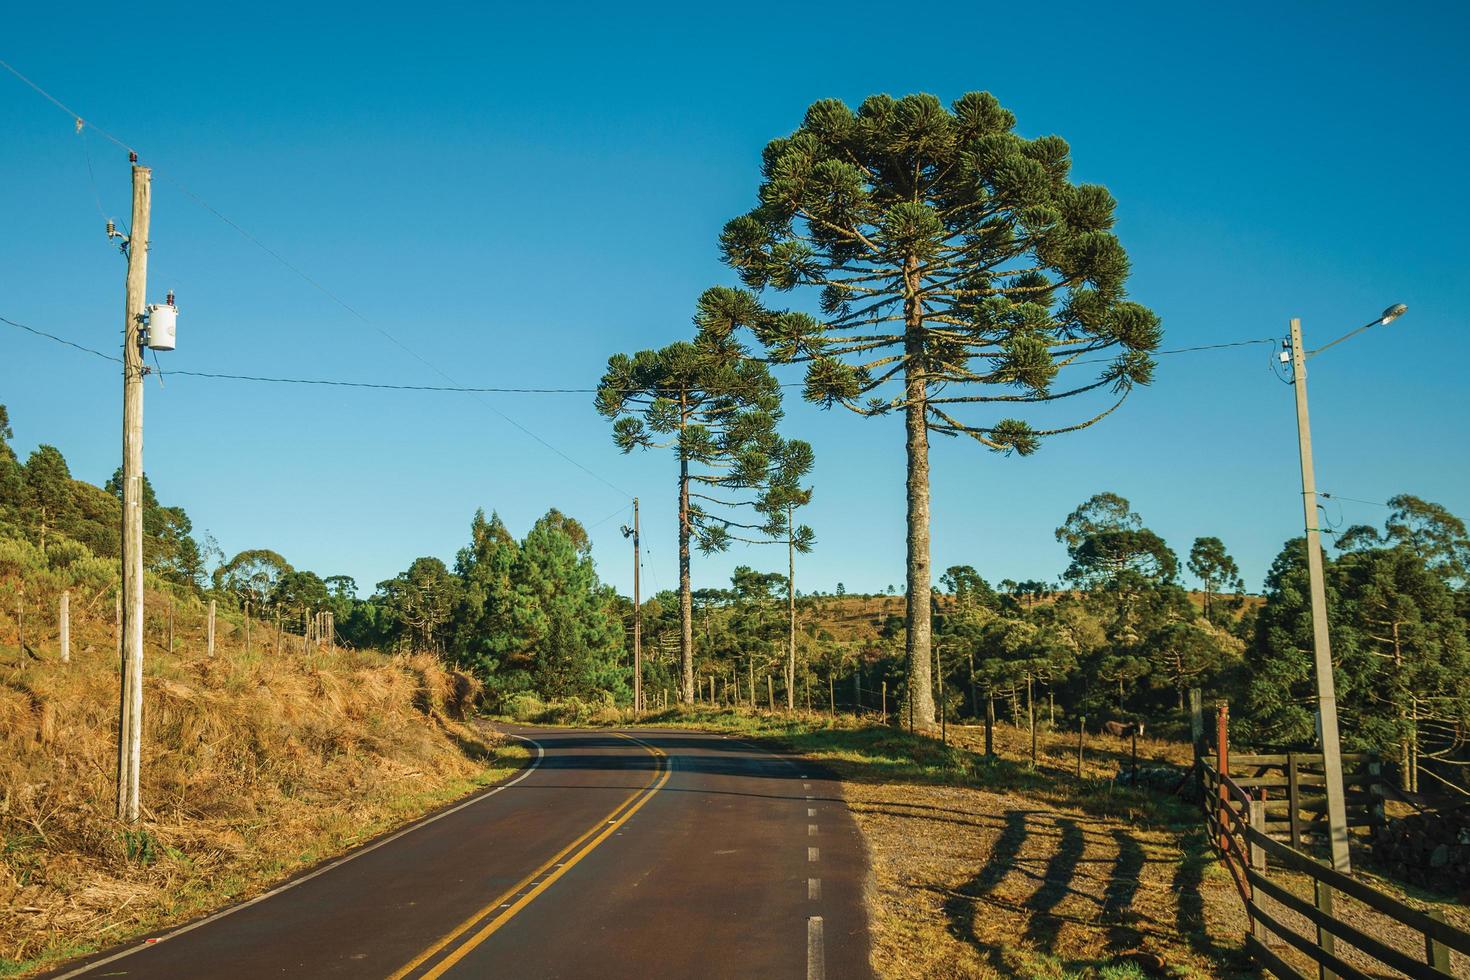 asfalterad väg som går genom lantliga lågland som kallas pampas vid sidan av träd och taggtrådsstängsel nära cambara do sul. en liten lantstad i södra Brasilien med fantastiska naturliga turistattraktioner. foto